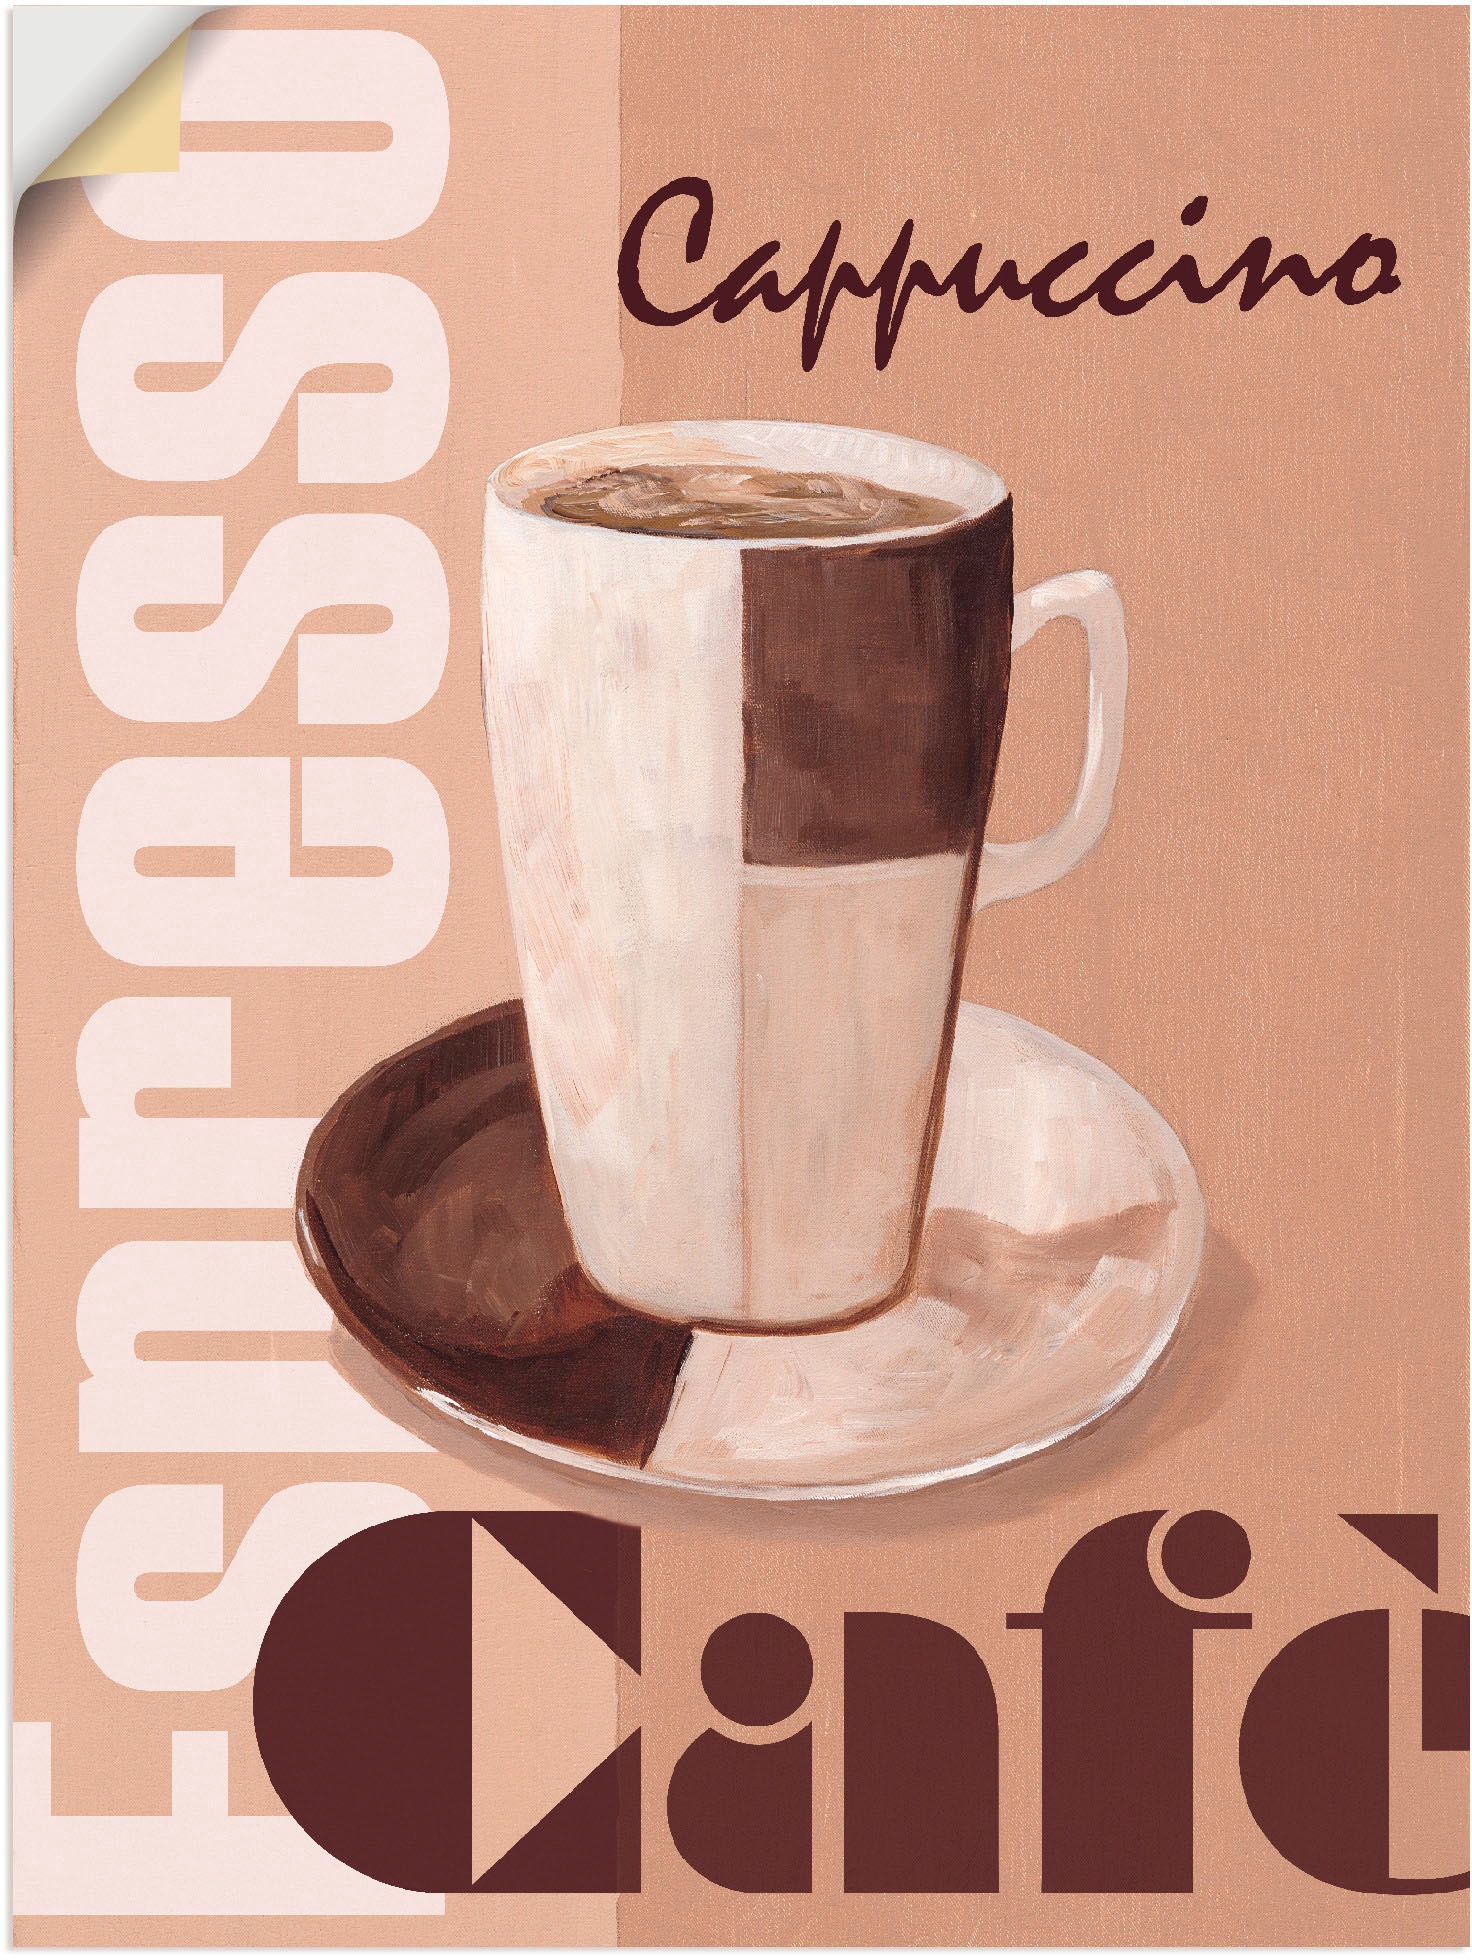 Alubild, versch. (1 »Cappuccino Artland günstig Poster - in St.), Kaffee«, Getränke, als kaufen oder Wandaufkleber Grössen Leinwandbild, Wandbild